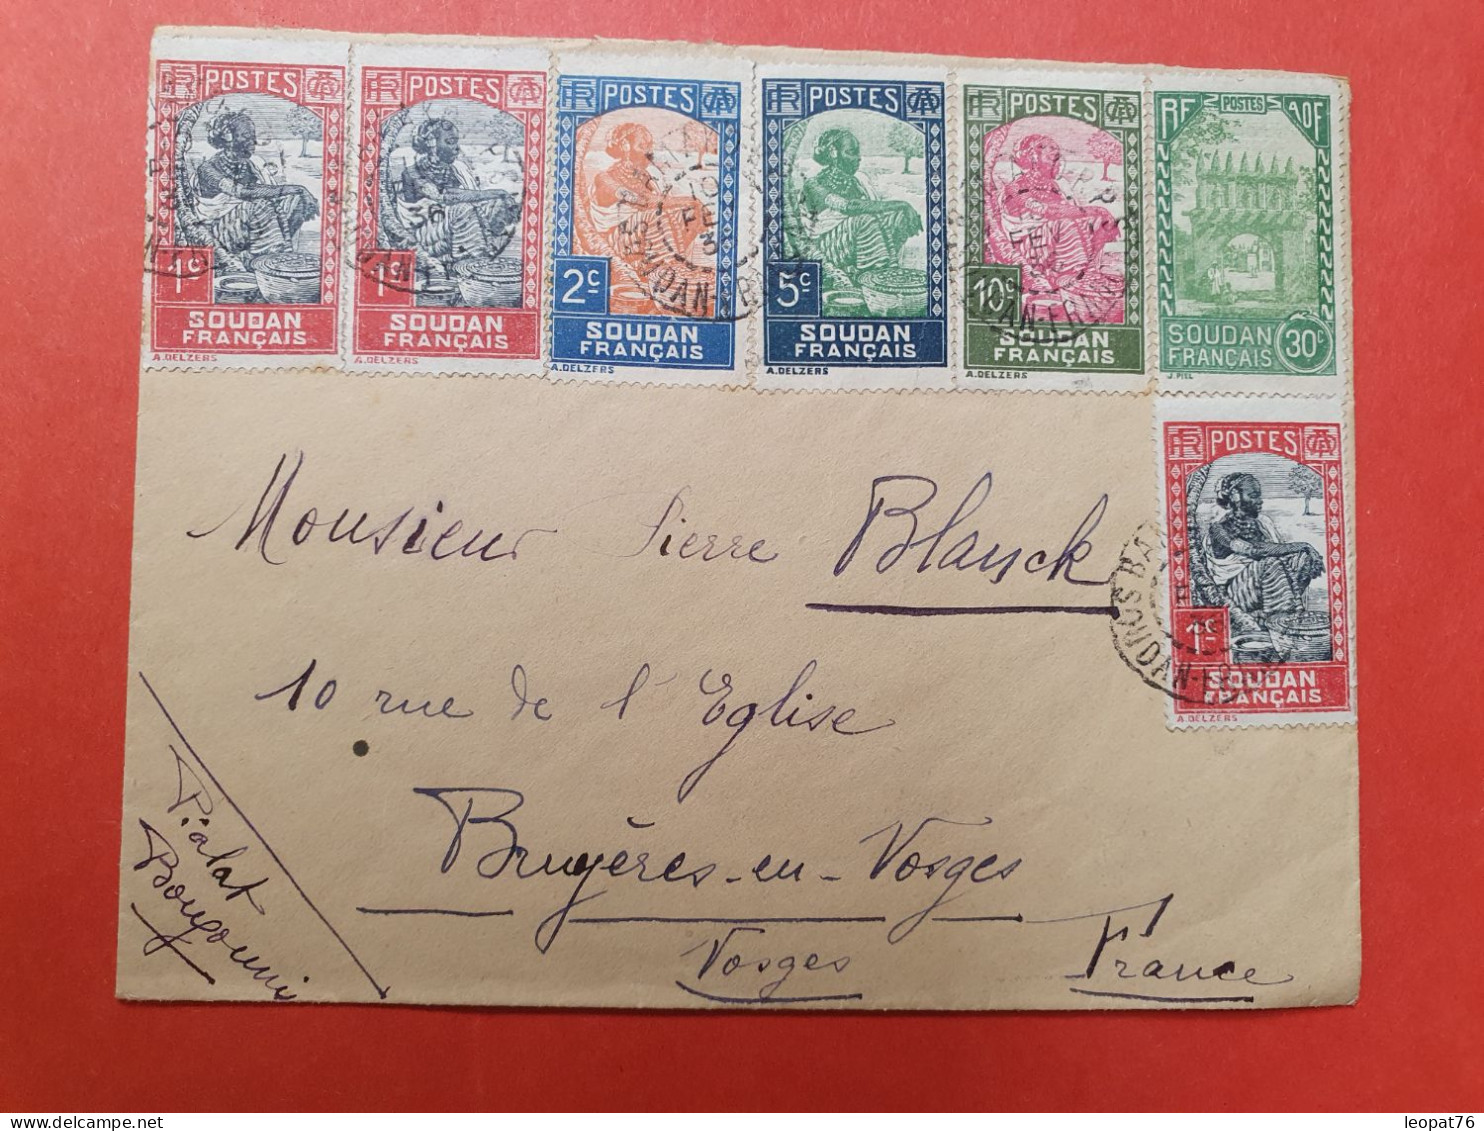 Soudan - Enveloppe De Bamako Pour La France En 1936, Affranchissement Varié  - D 14 - Lettres & Documents